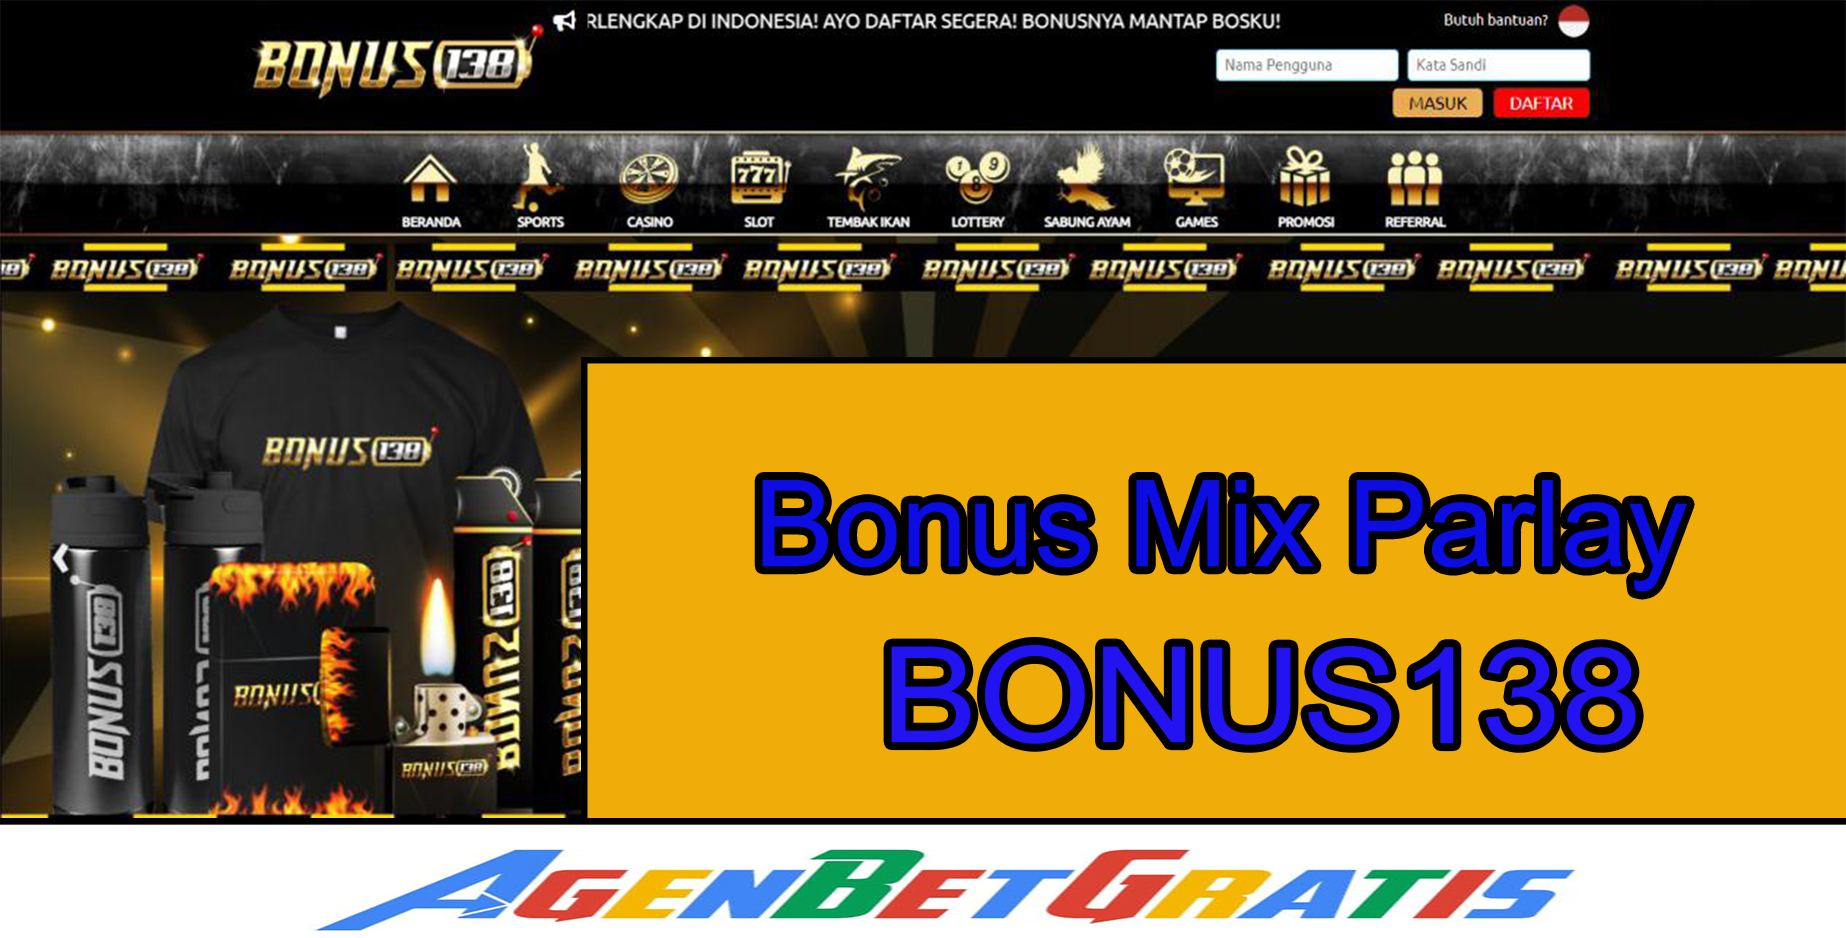 BONUS138 - Bonus Mix Parlay